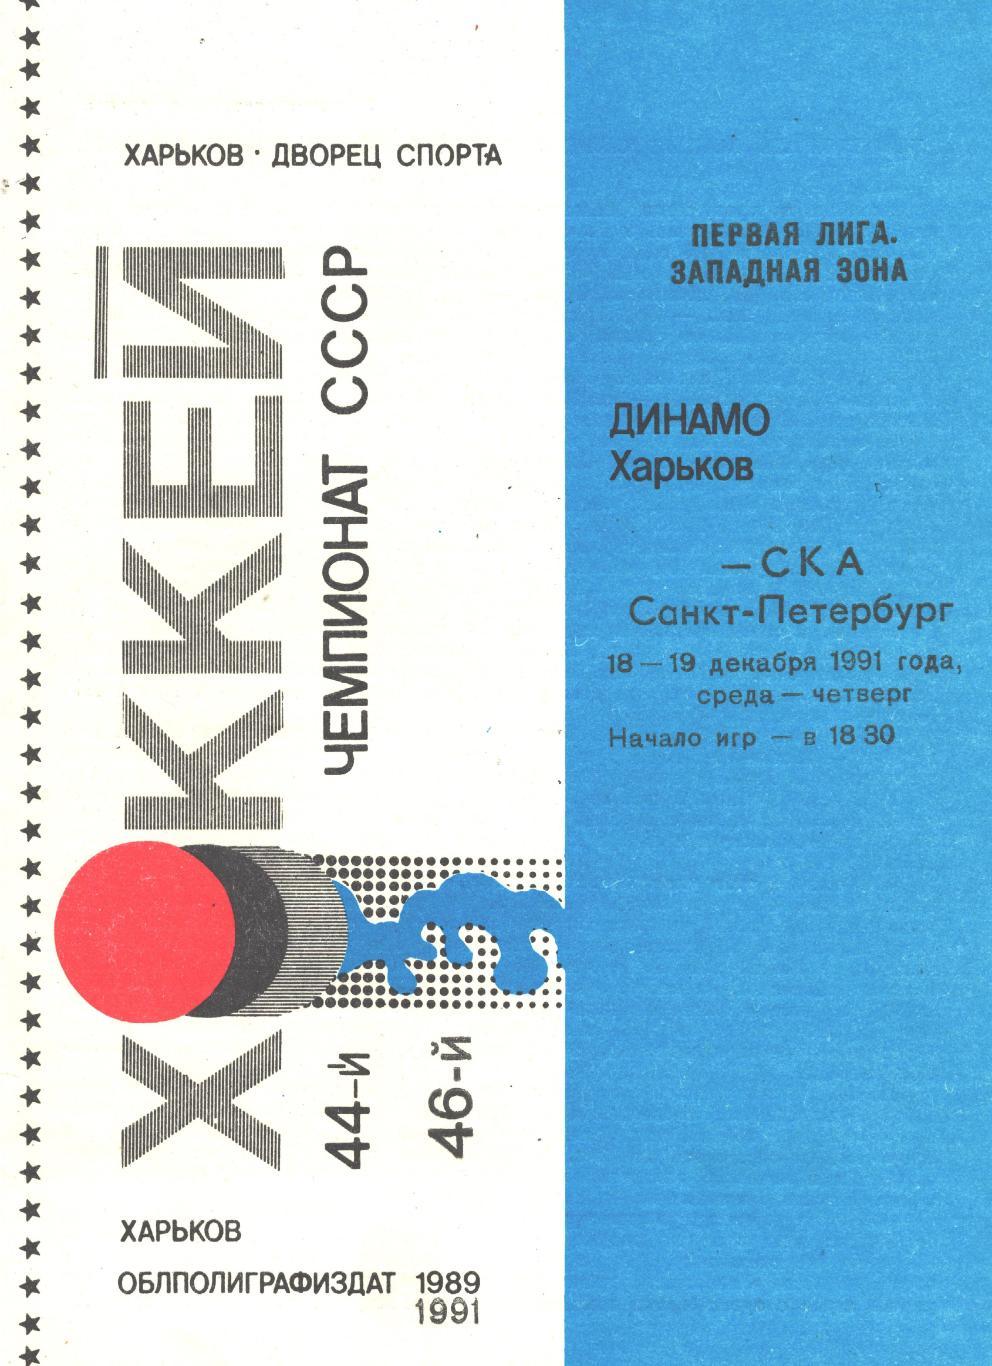 ДИНАМО (Харьков) - СКА (Санкт-Петербург), 18-19 декабря 1991 года